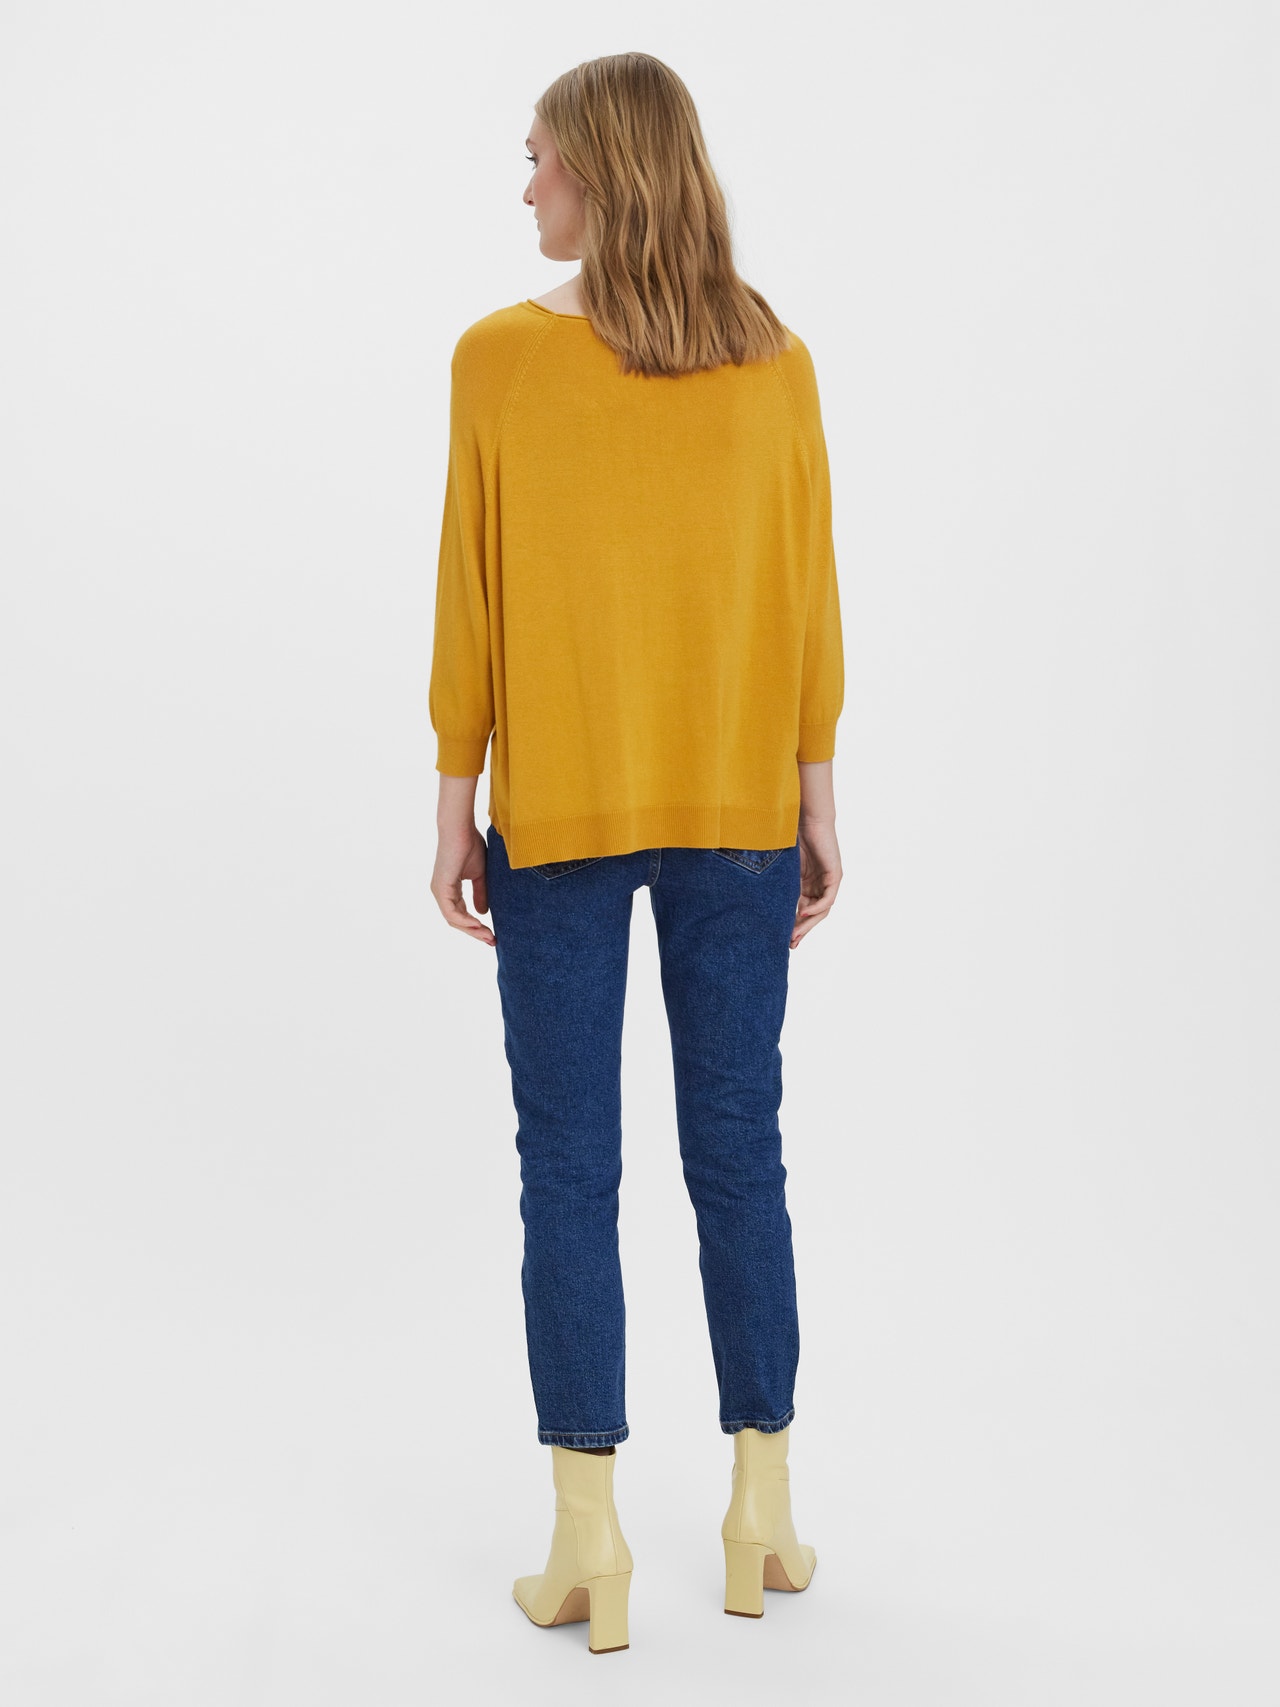 Vero Moda VMNELLIE Sweter -Golden Yellow - 10264755